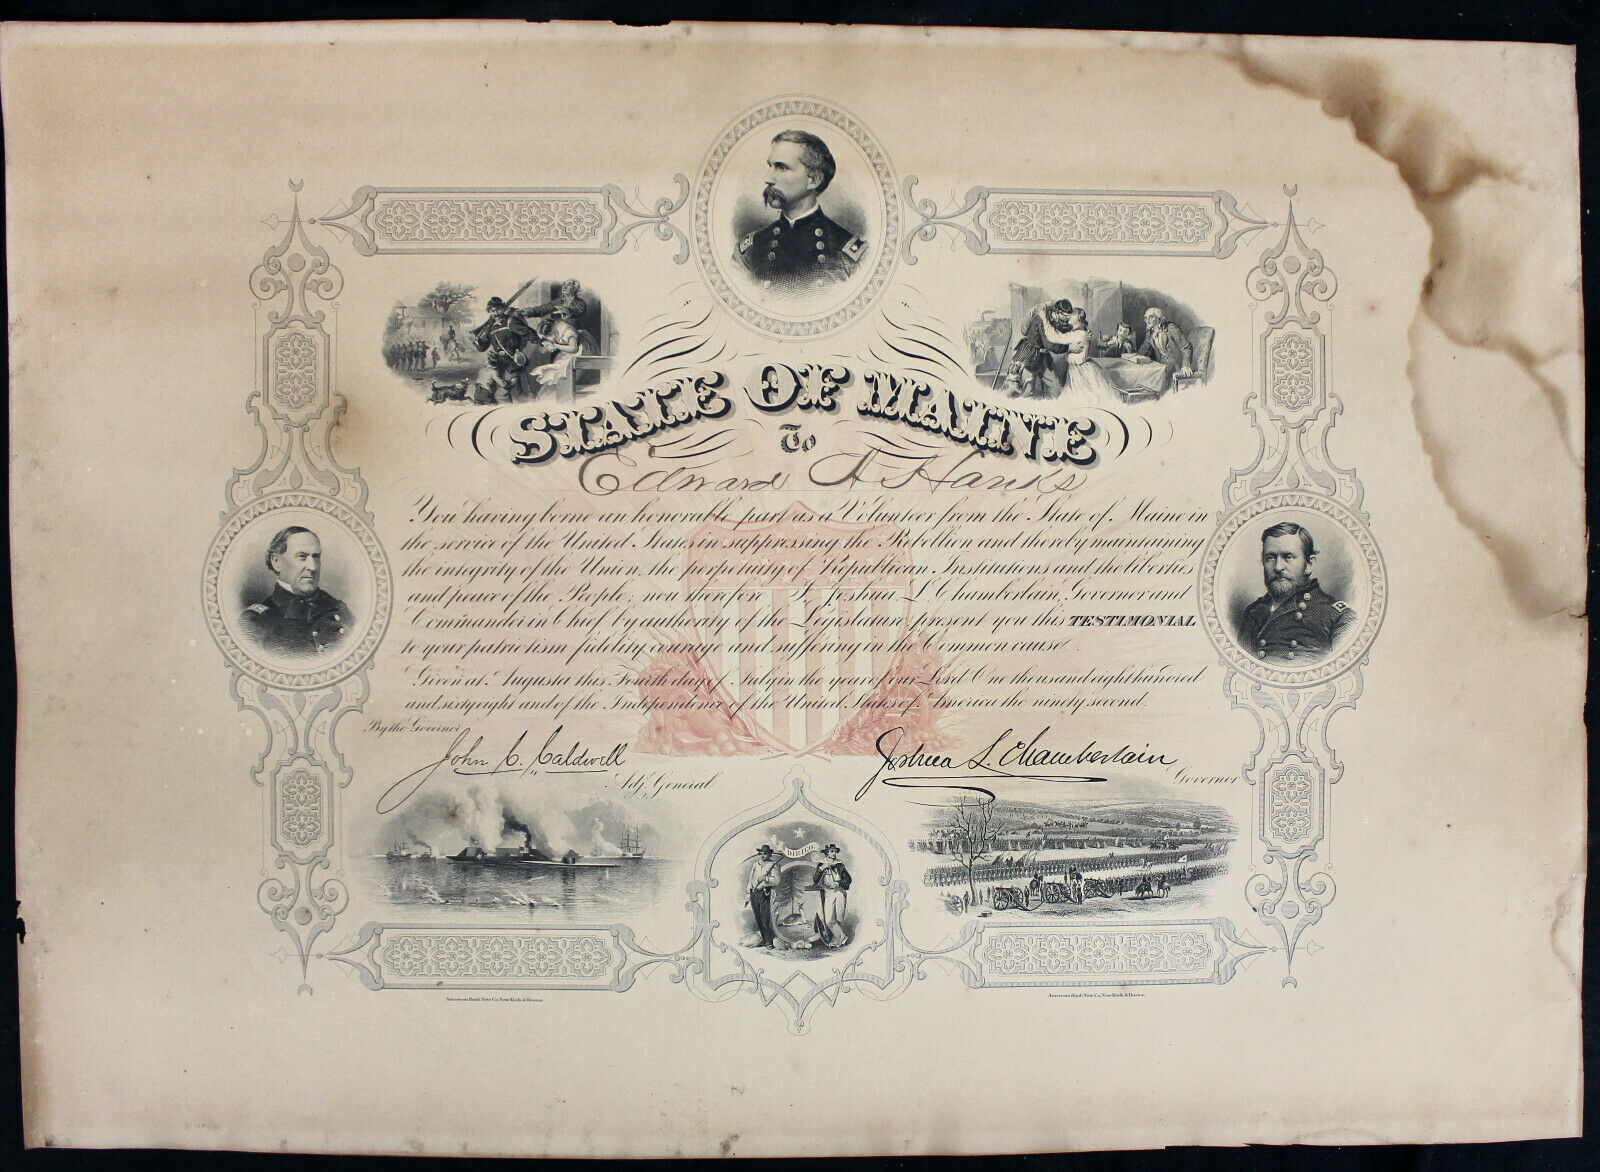 Original 1868 Maine Civil War Appreciation Certificate